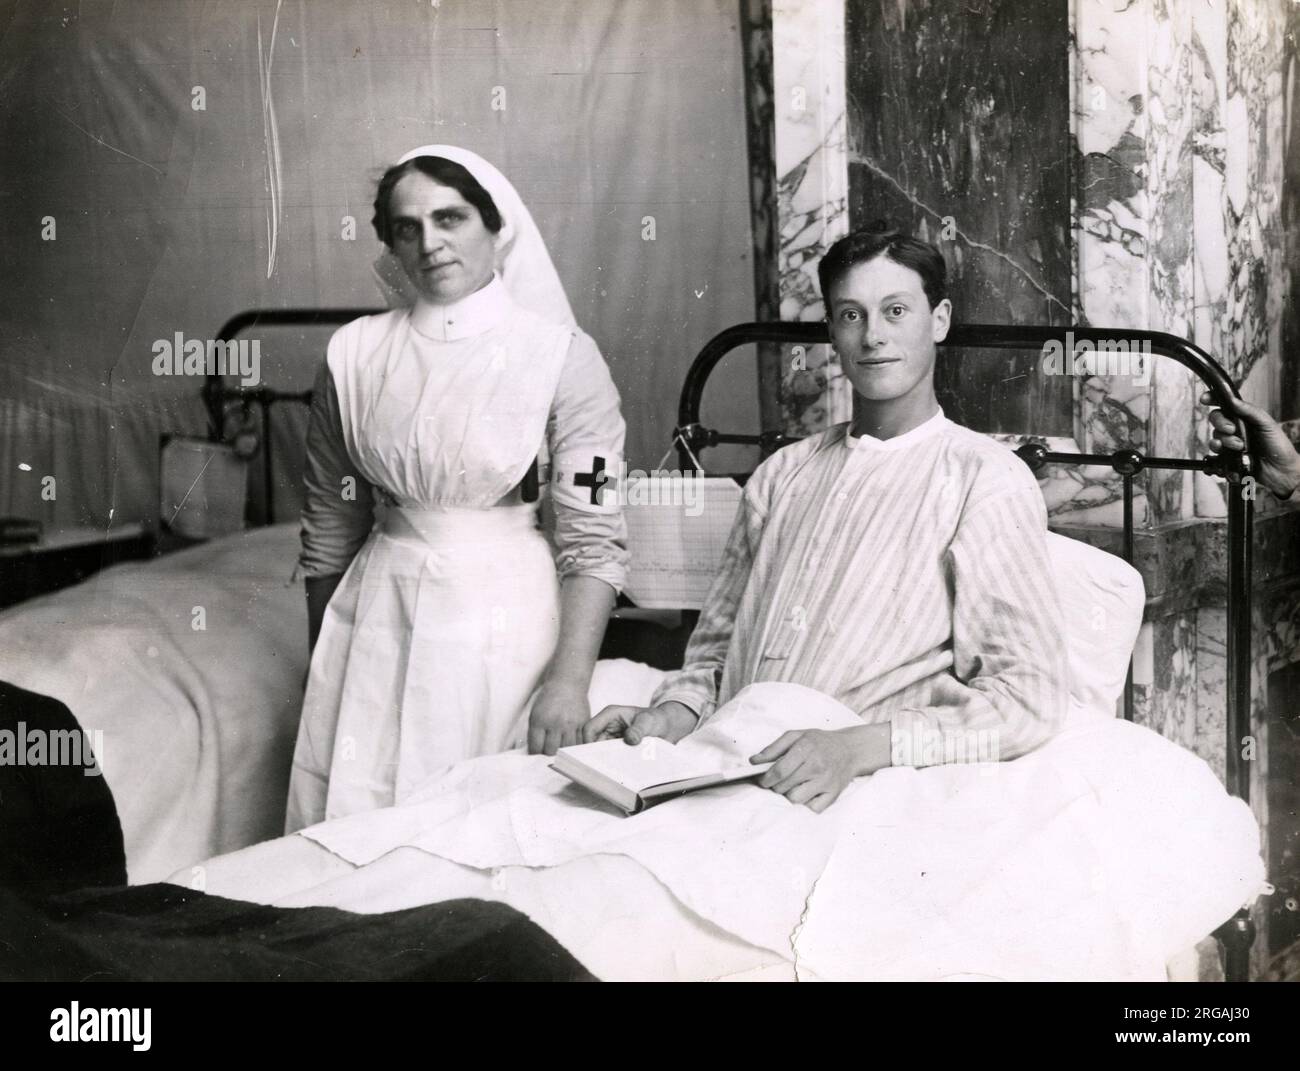 Fotografia della prima guerra mondiale d'epoca - prima guerra mondiale: Soldato in ospedale militare, con infermiera. Foto Stock